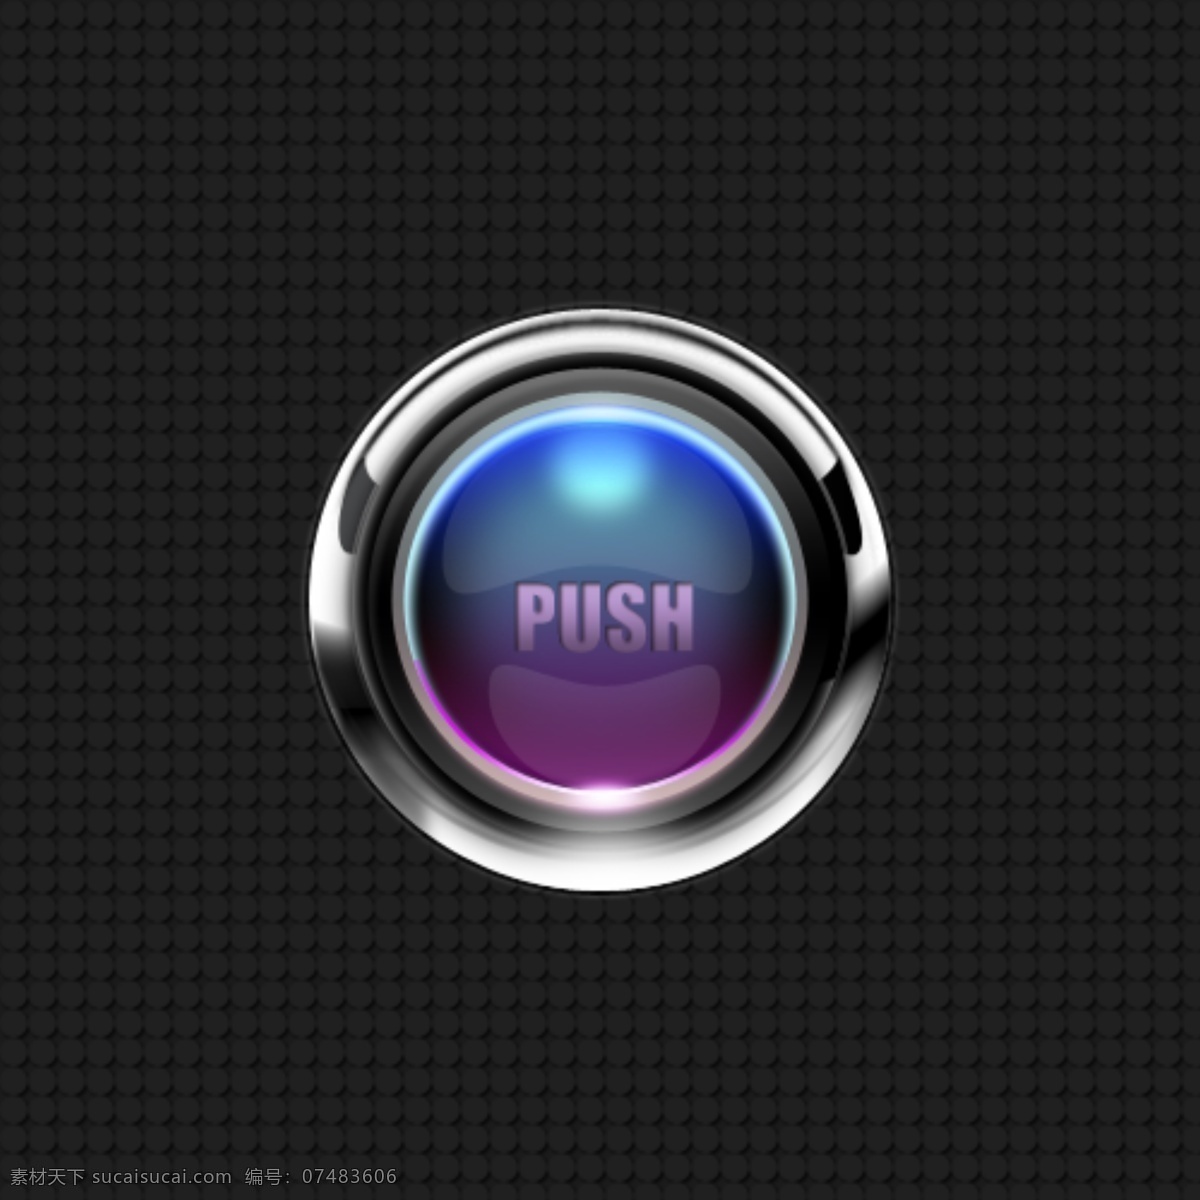 质感 金属 按钮 金属按钮 质感按钮 中文模板 发光按钮 金属质感按钮 push按钮 web 界面设计 网页素材 其他网页素材